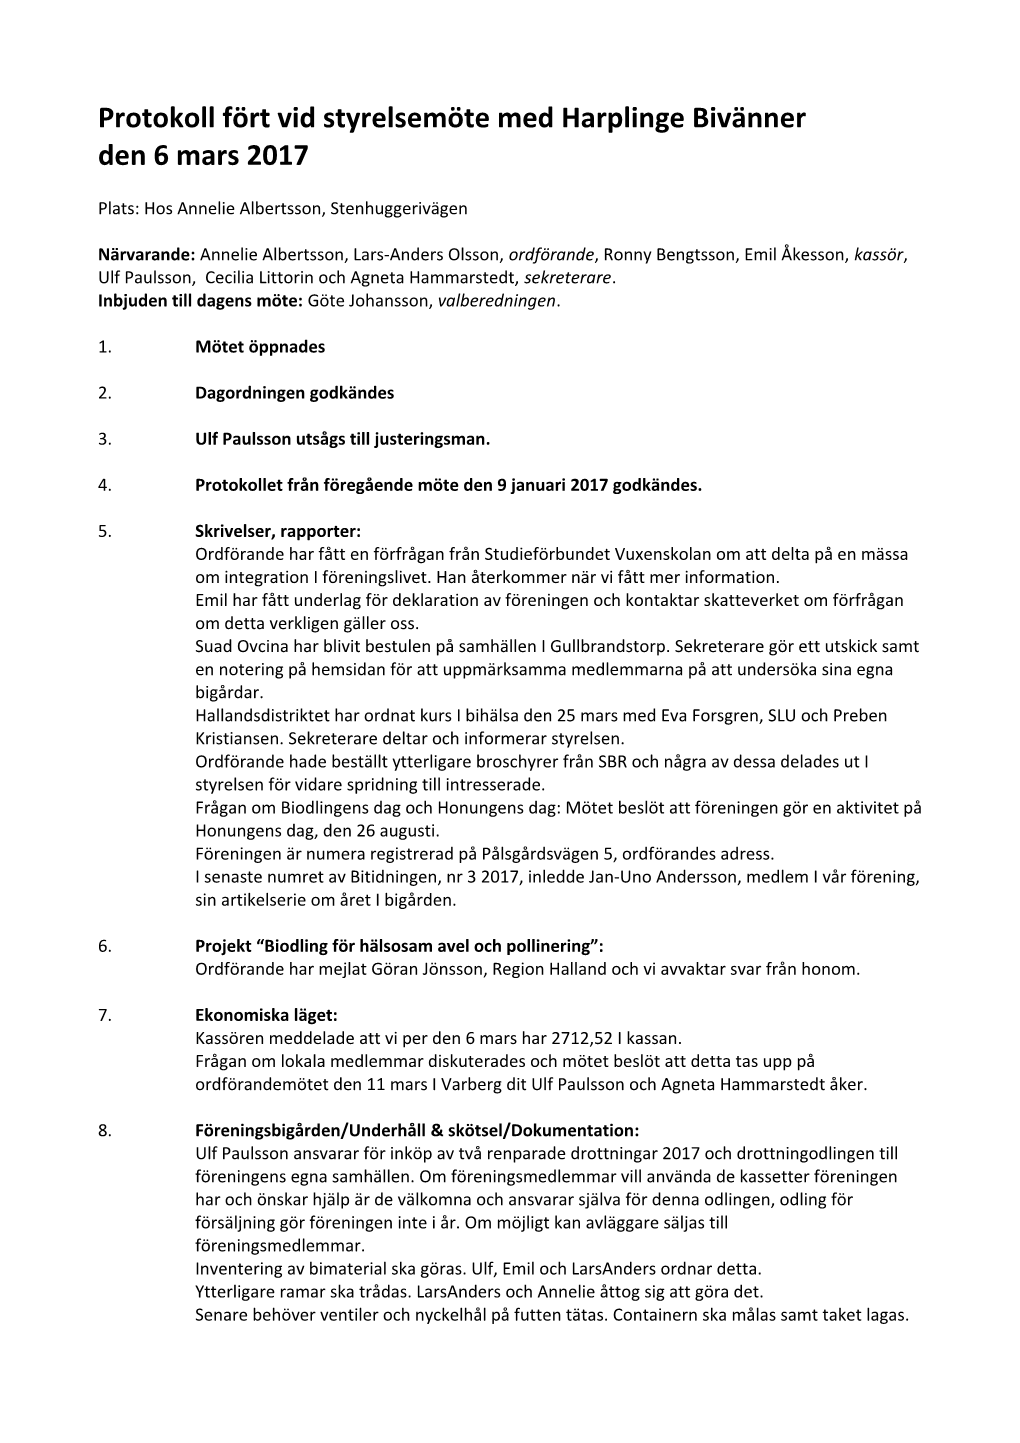 Protokoll Fört Vid Styrelsemöte Med Harplinge Bivänner Den 6 Mars 2017